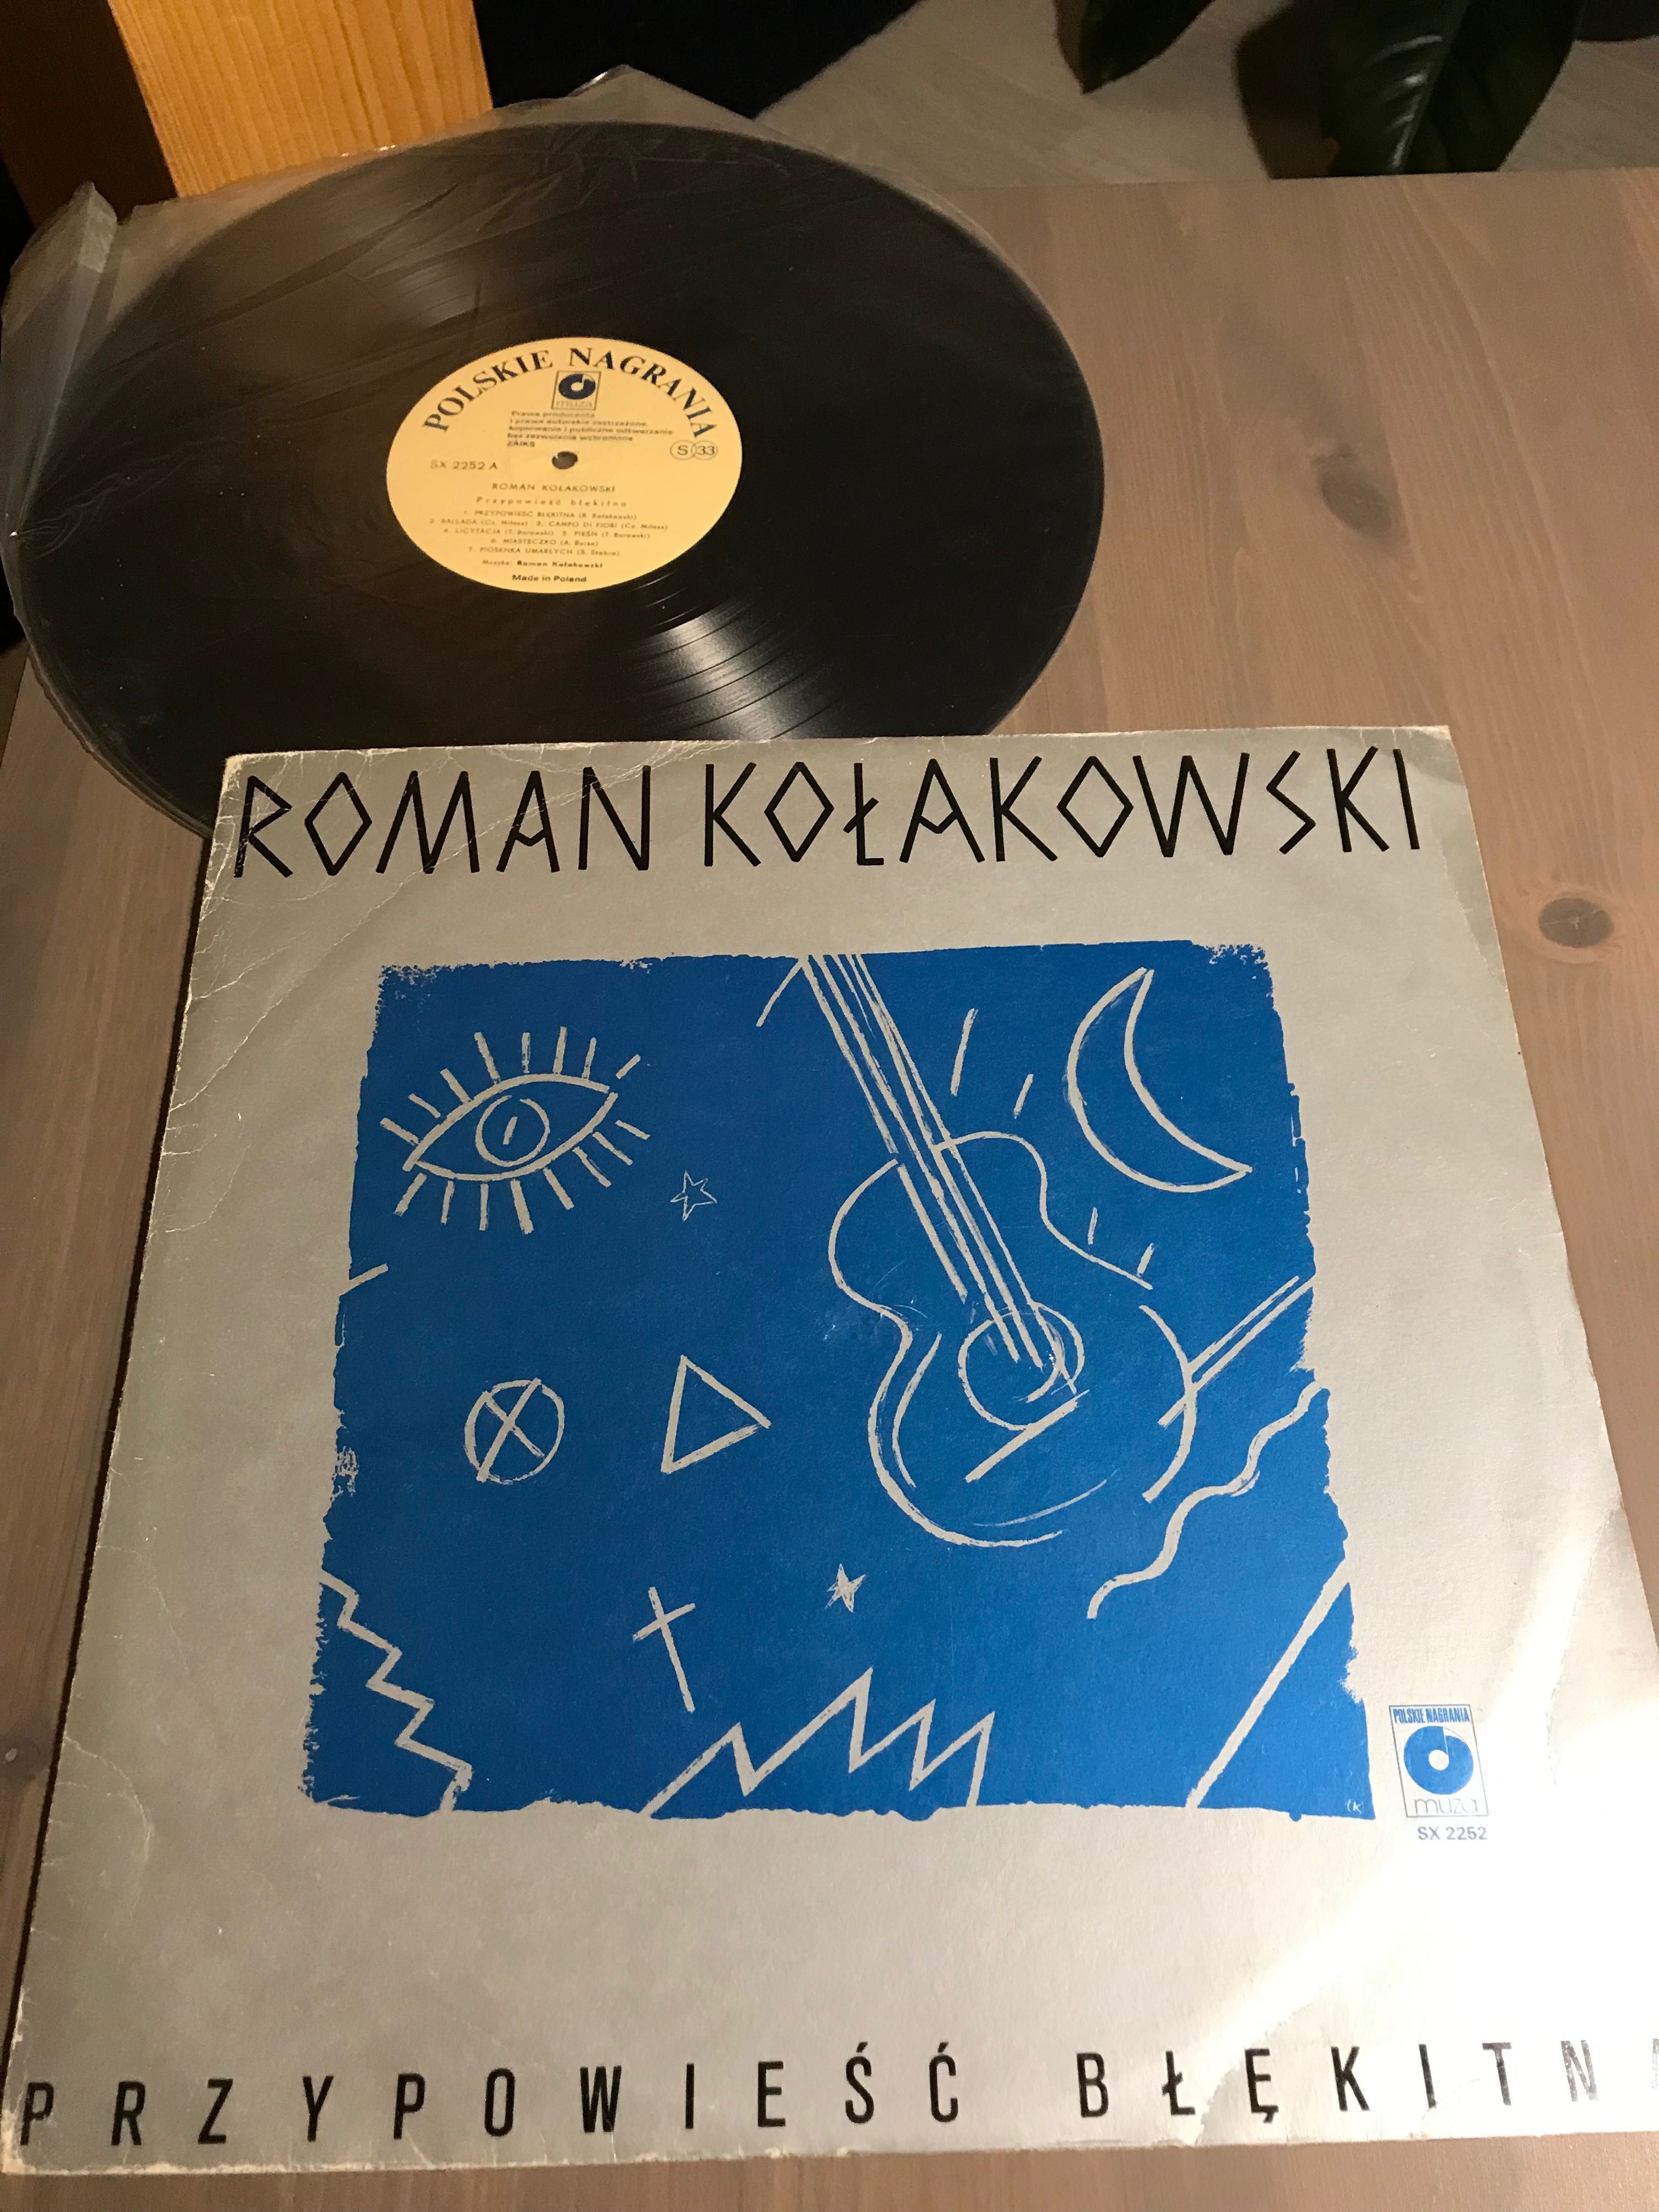 Roman Kołakowski Przypowieść Błękitna płyta winylowa 1985